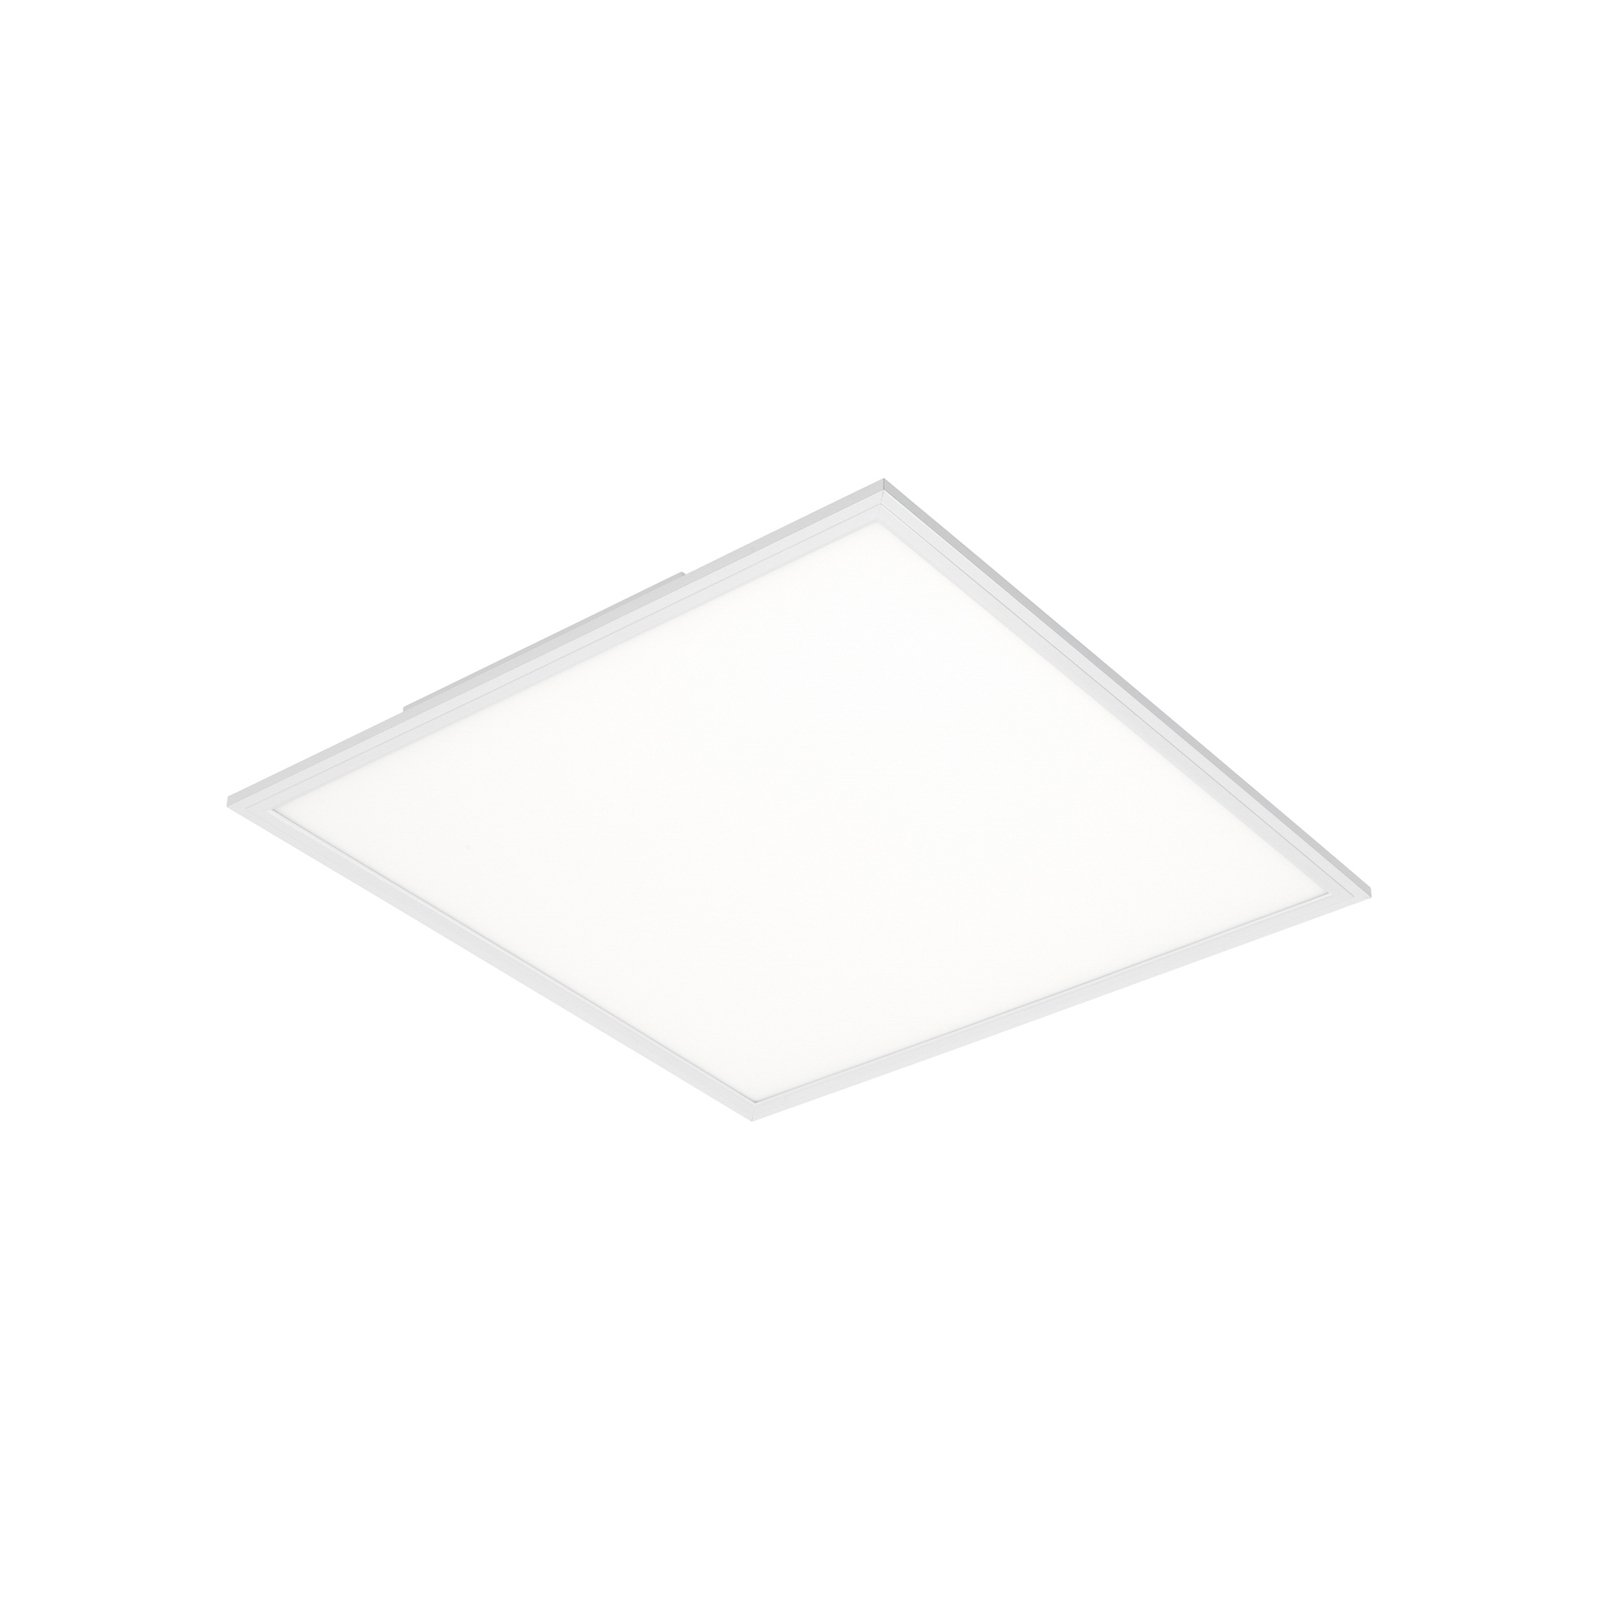 LED-paneeli Simple valkoinen ultraohut 59,5x59,5cm